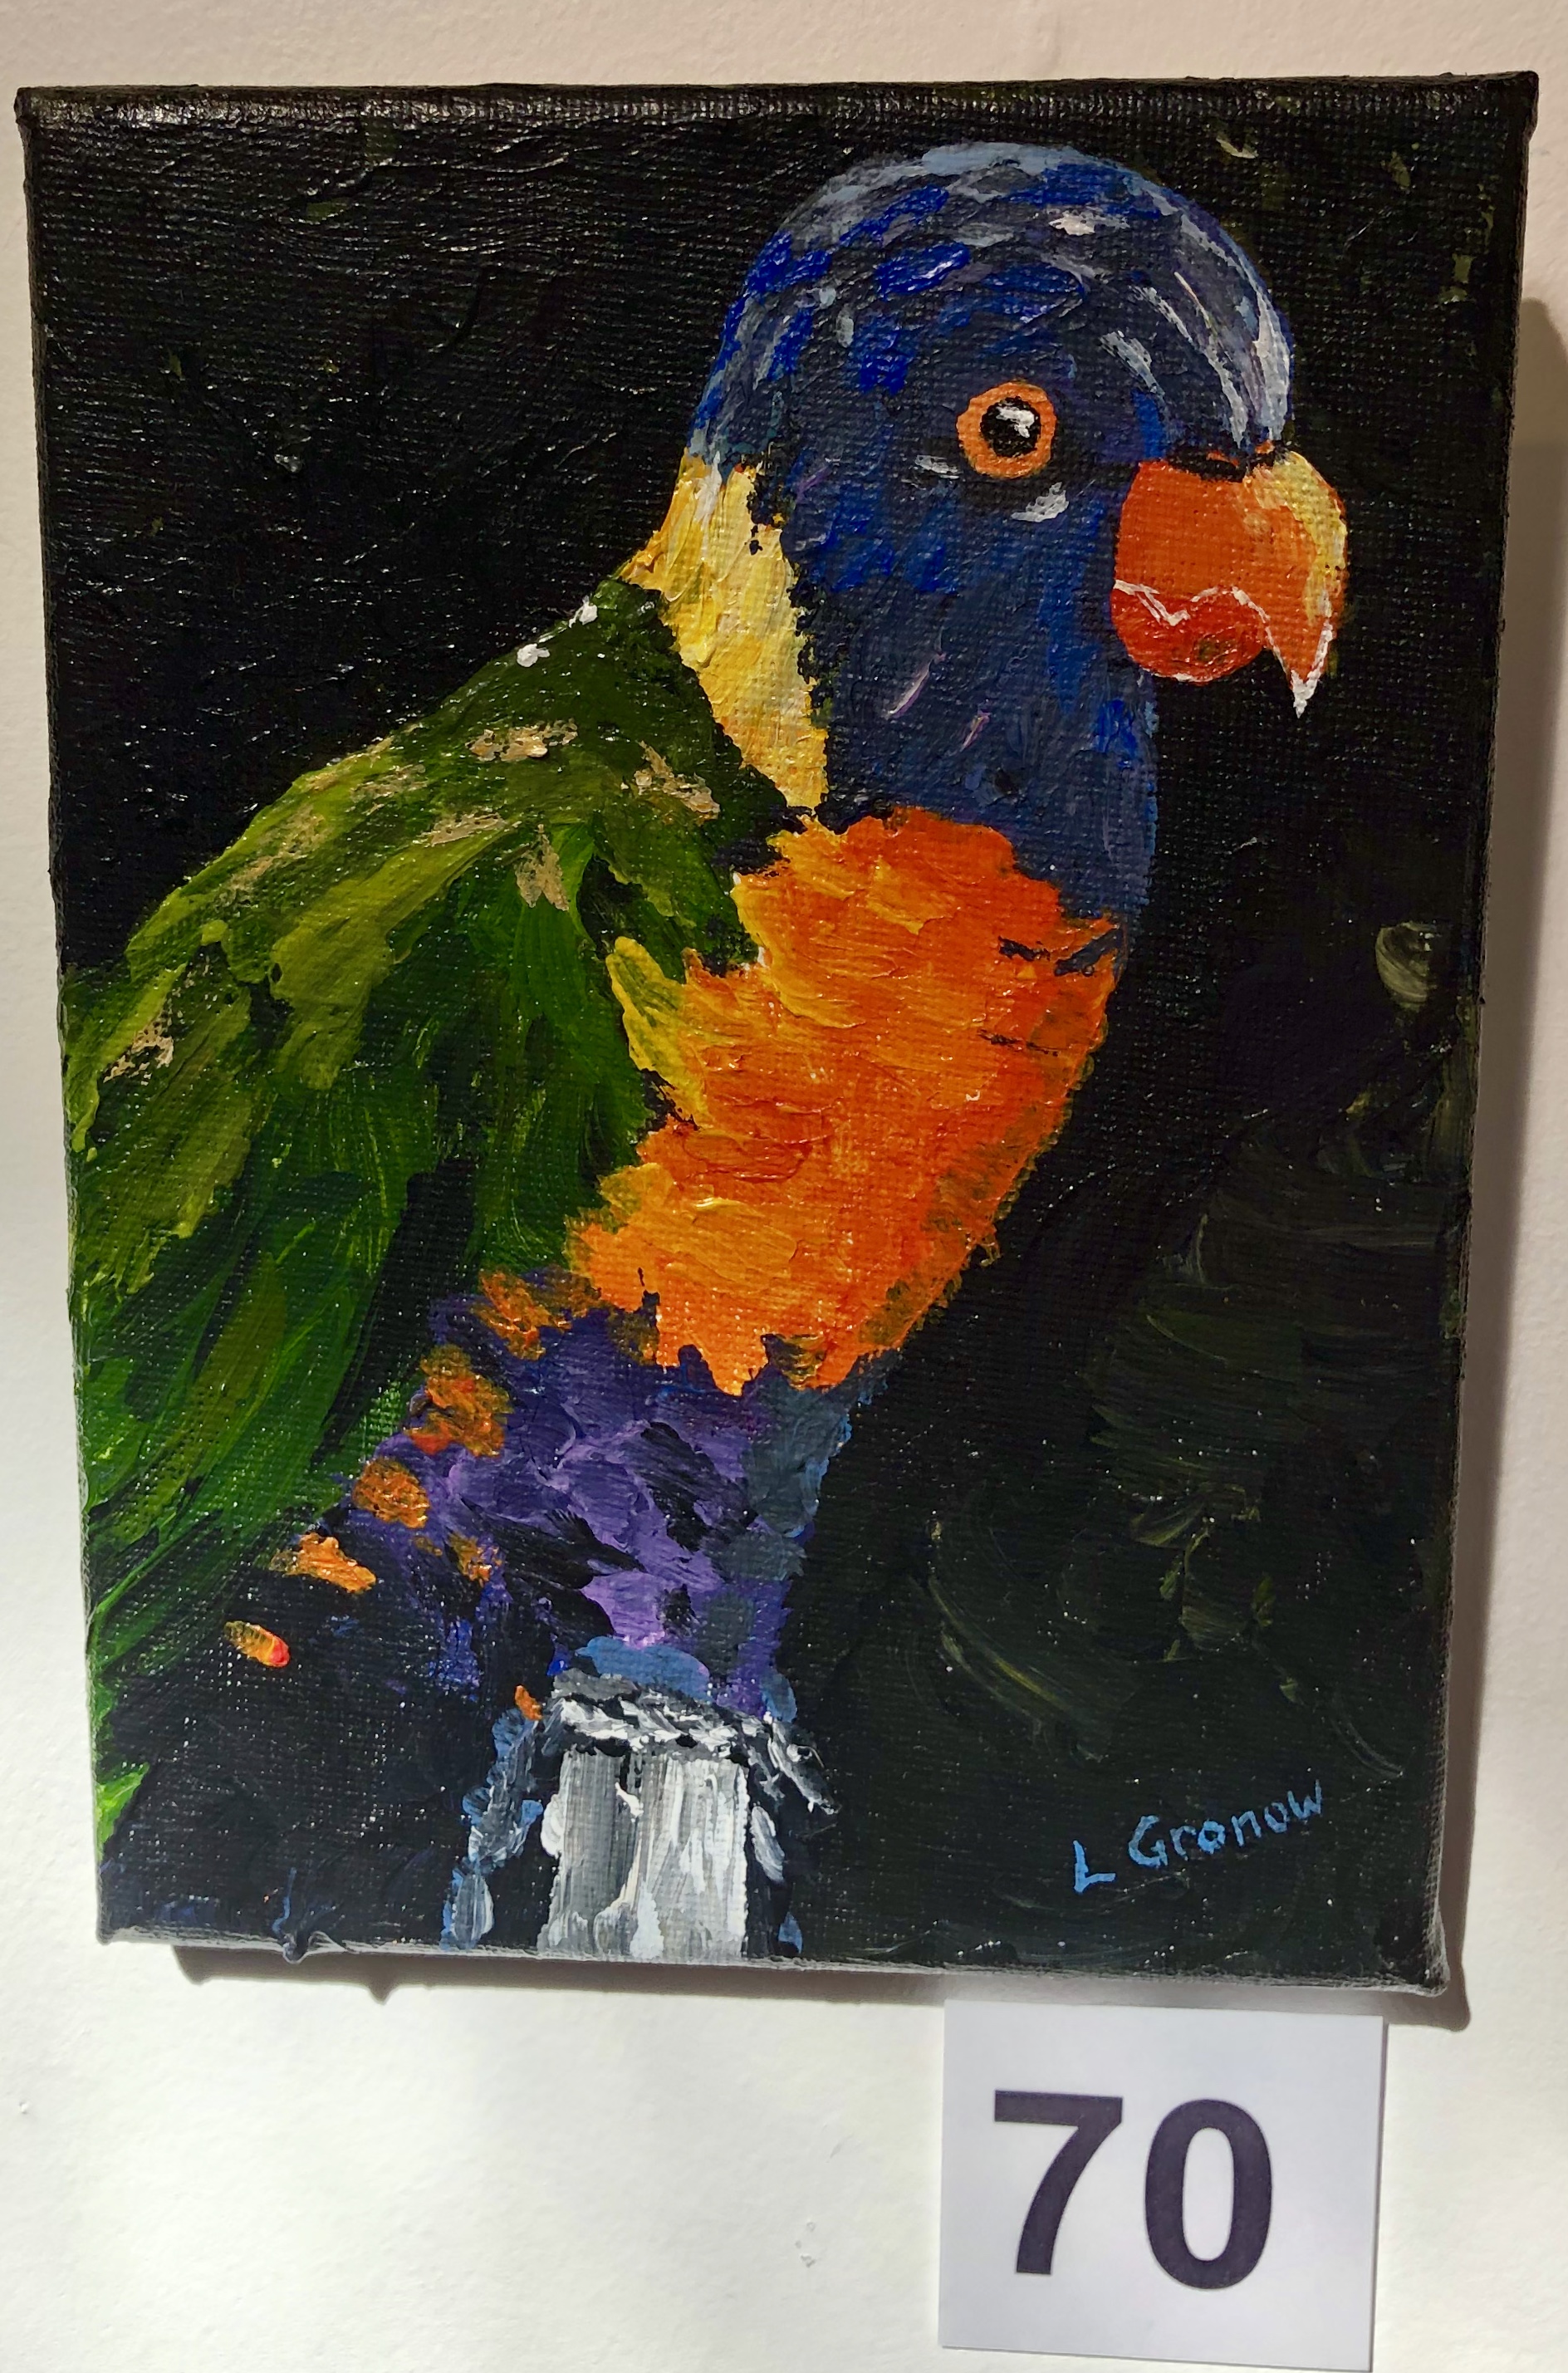 "Bird 1" by Lois Gronow